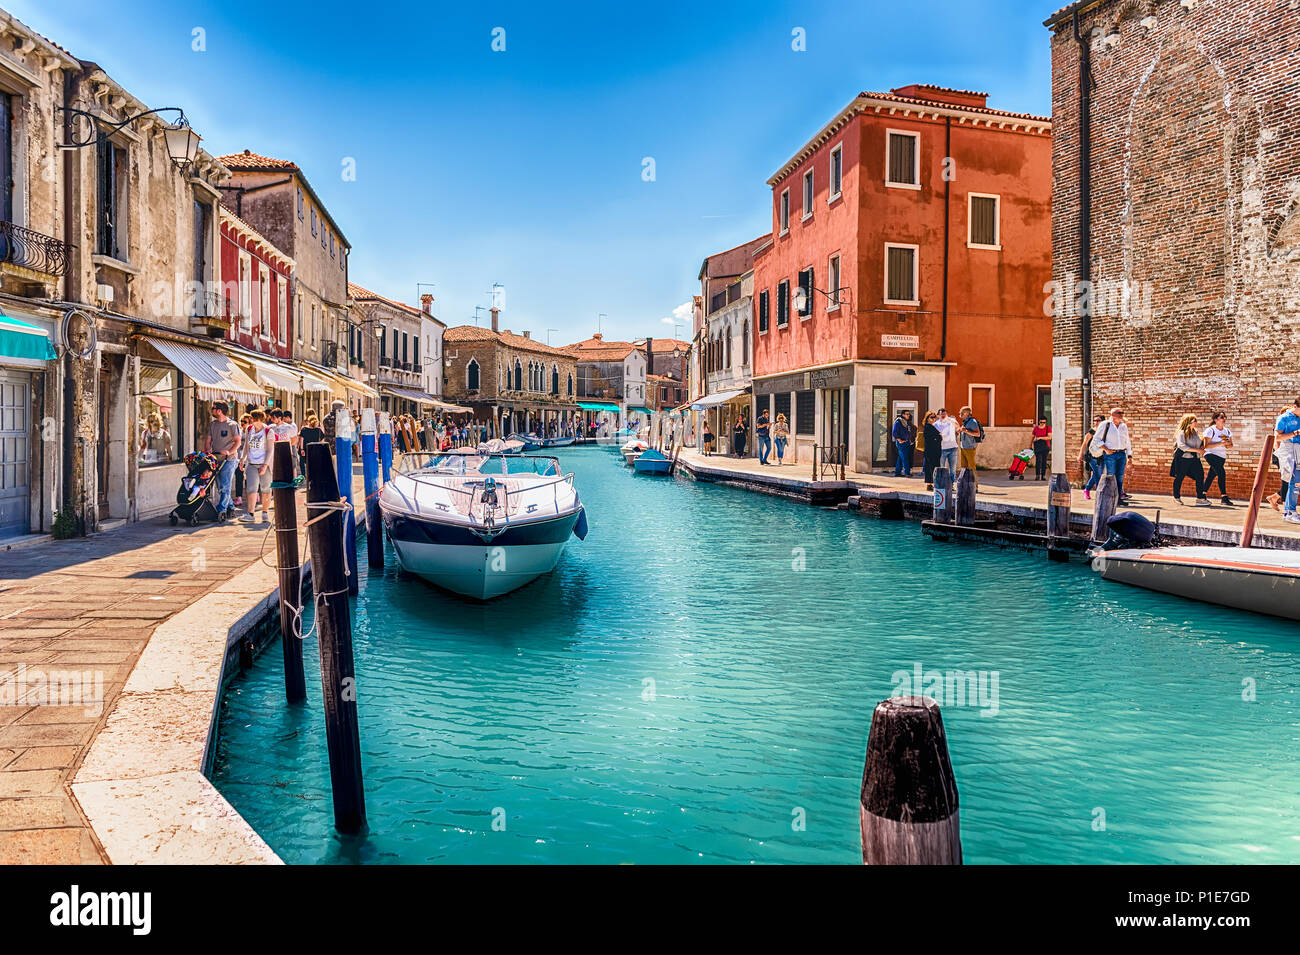 Venise, Italie - 30 avril : vue sur le canal pittoresque Rio dei Vetrai sur l'île de Murano, Venise, Italie, le 30 avril 2018. L'île est un populaire à Banque D'Images